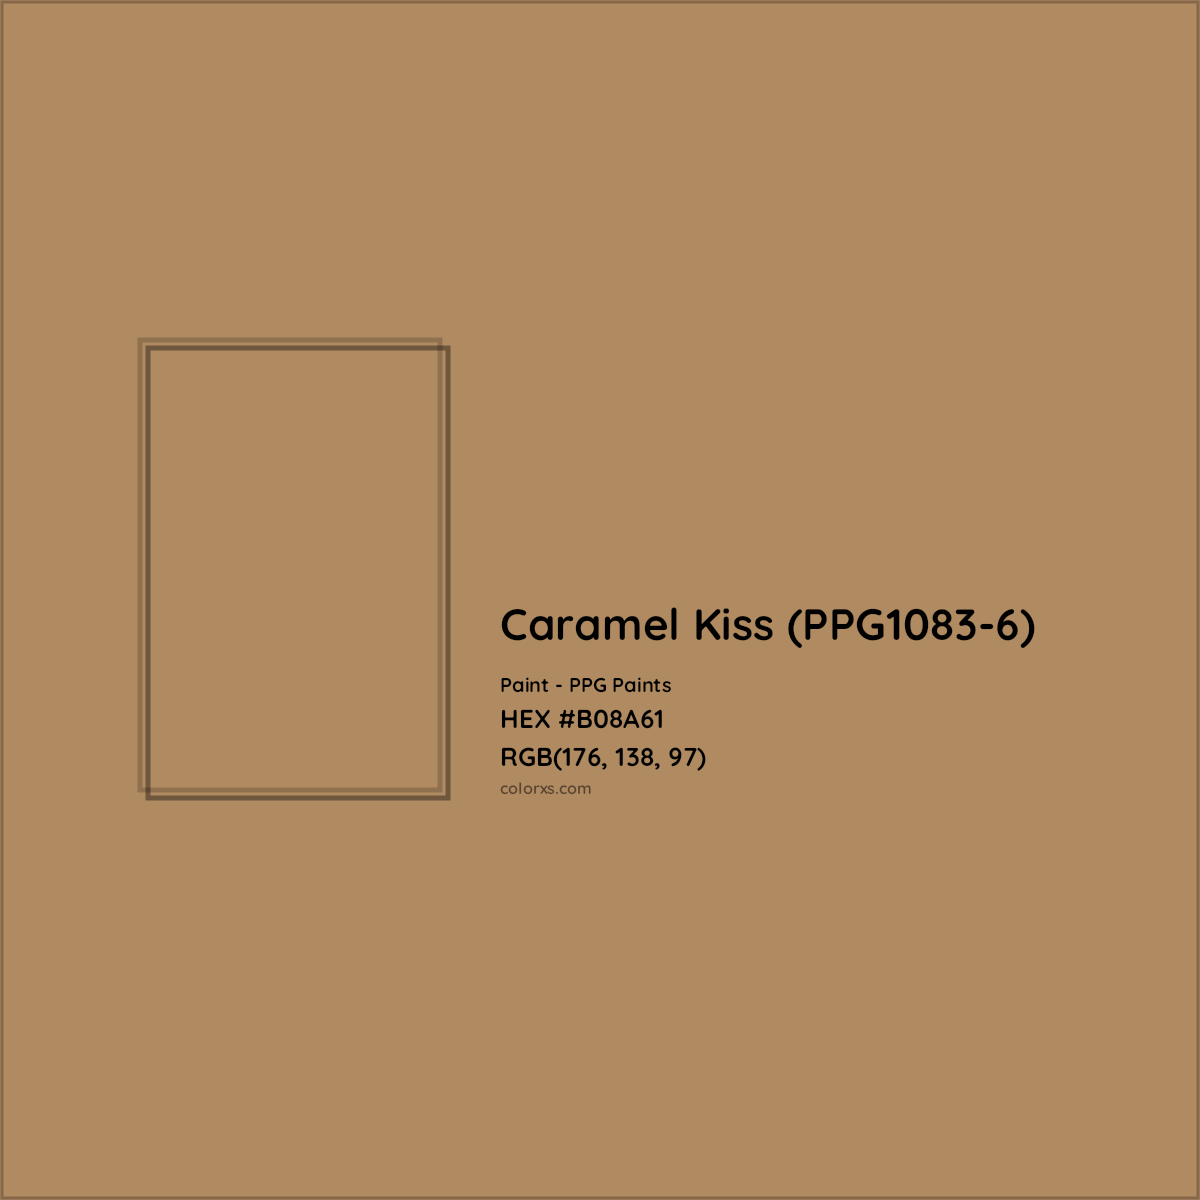 HEX #B08A61 Caramel Kiss (PPG1083-6) Paint PPG Paints - Color Code